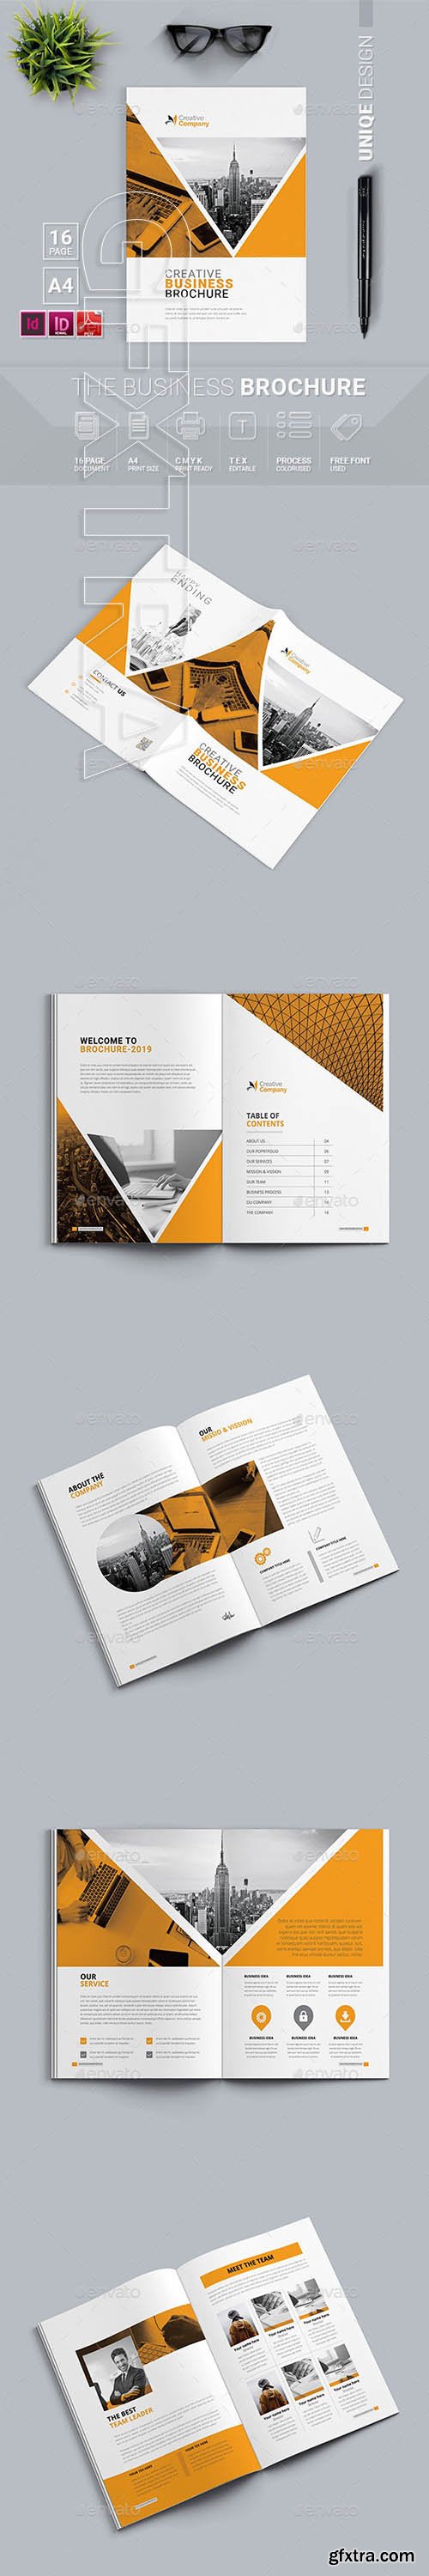 GraphicRiver - Brochure 24667513